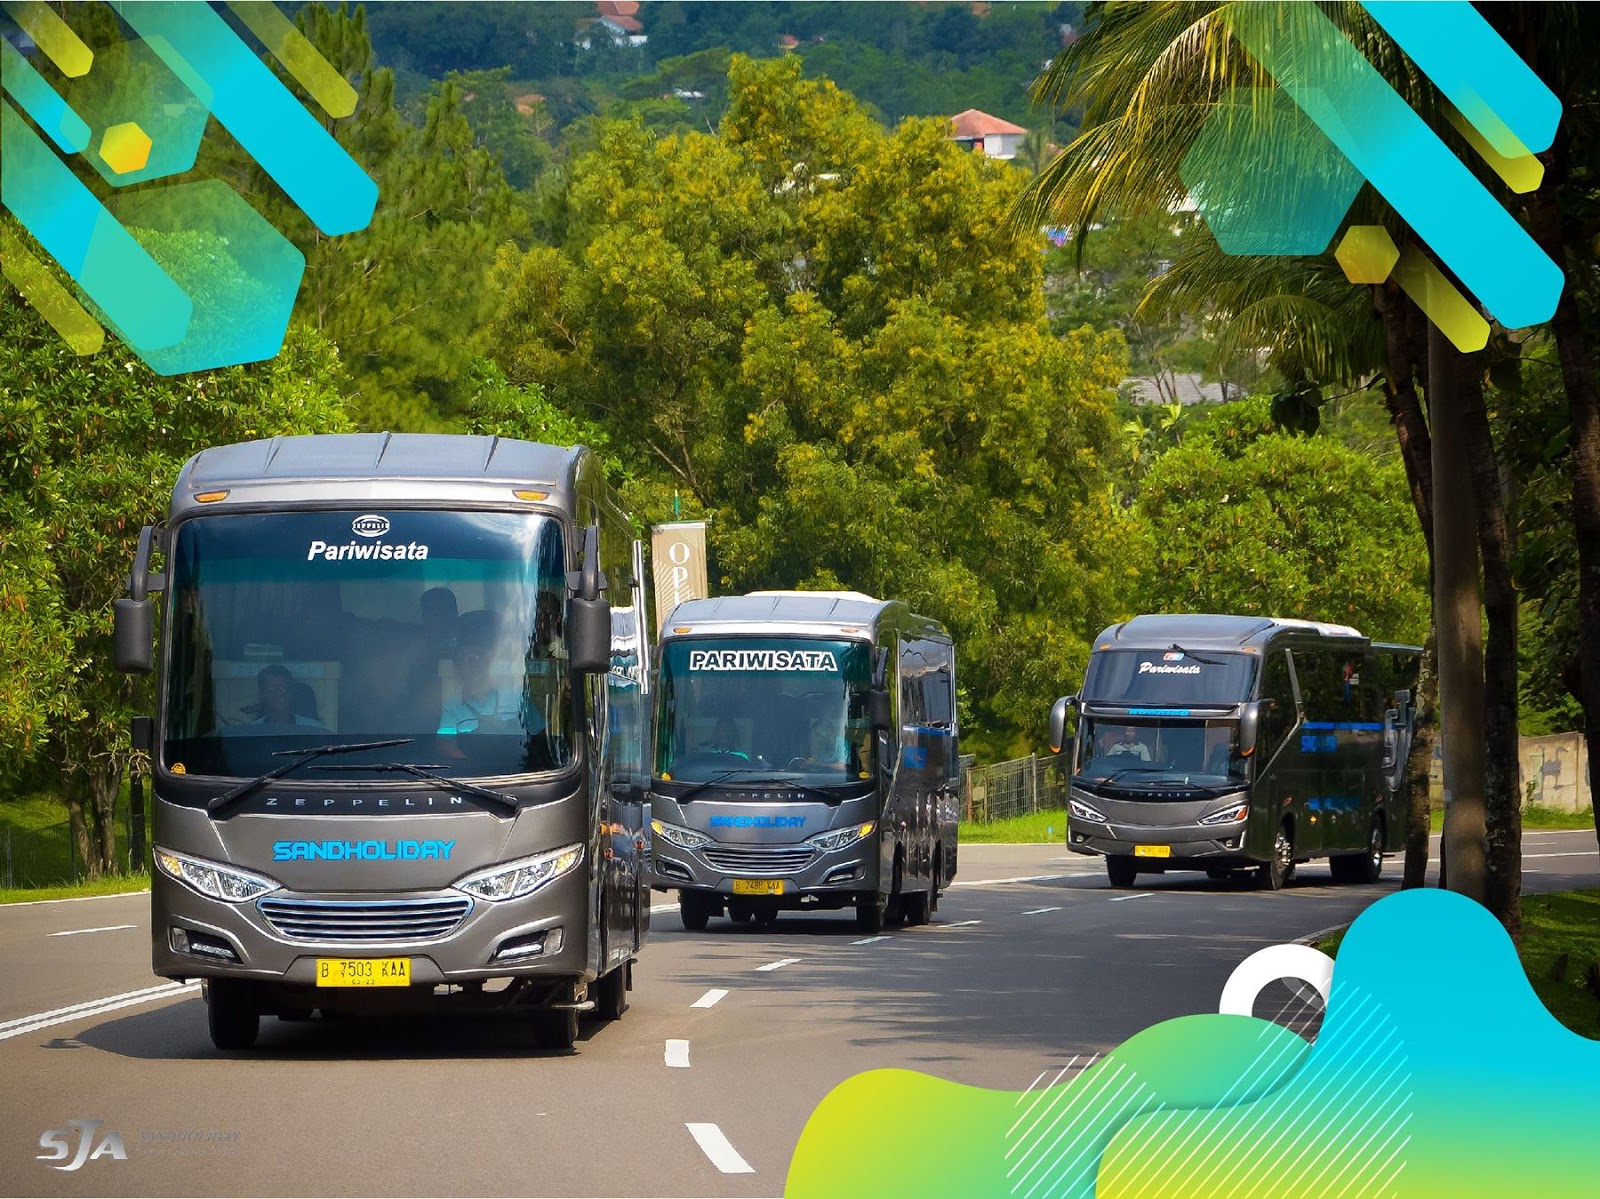 Sewa Bus Pariwisata Murah di Jakarta dan Bali